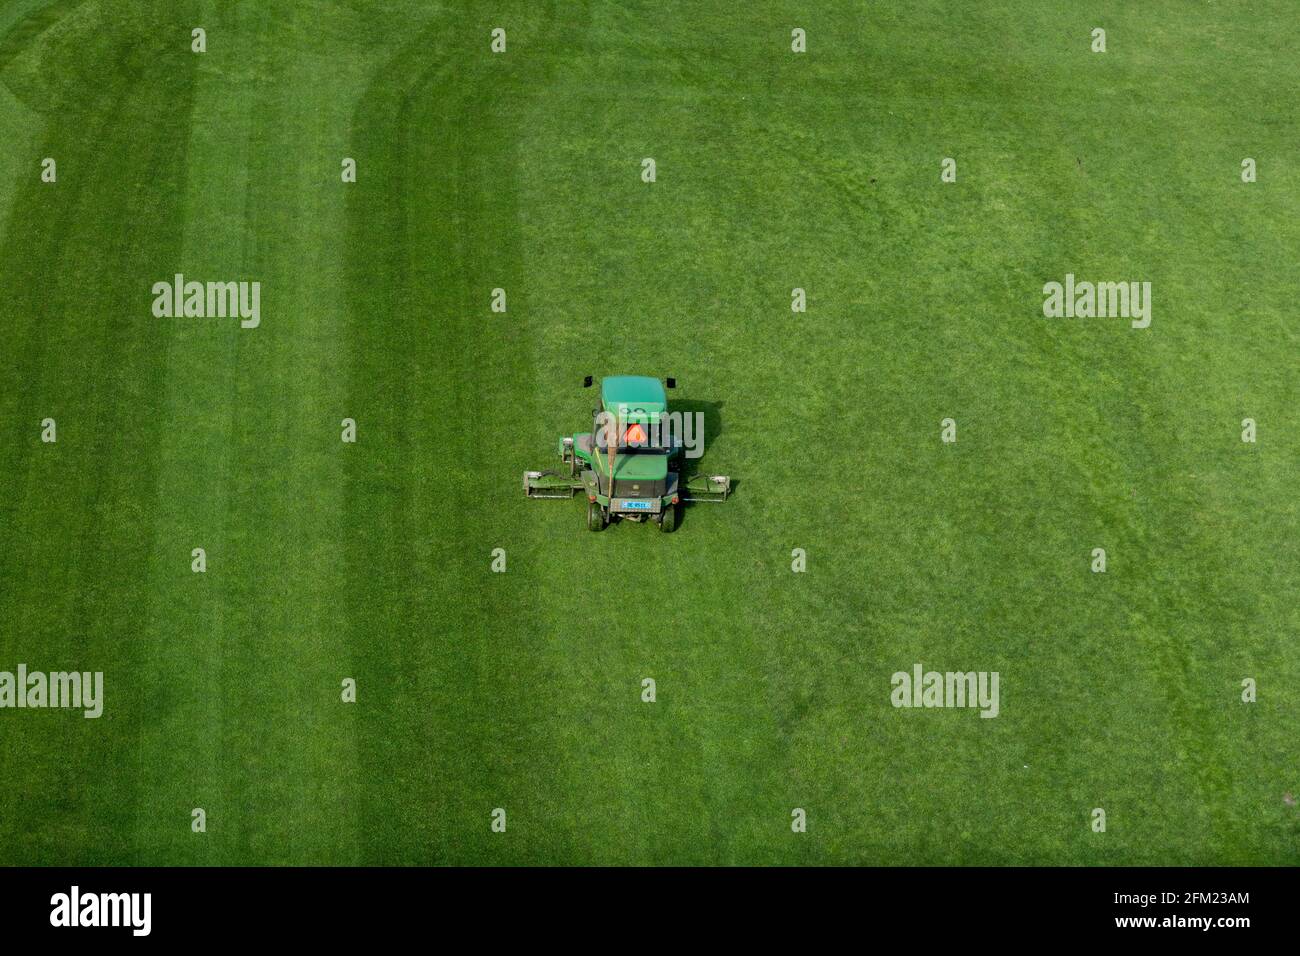 Bern, Schweiz - 26. April 2021: Eine Fahrt mit dem Rasenmäher, der Gras auf einem Fußballfeld schneidet Stockfoto